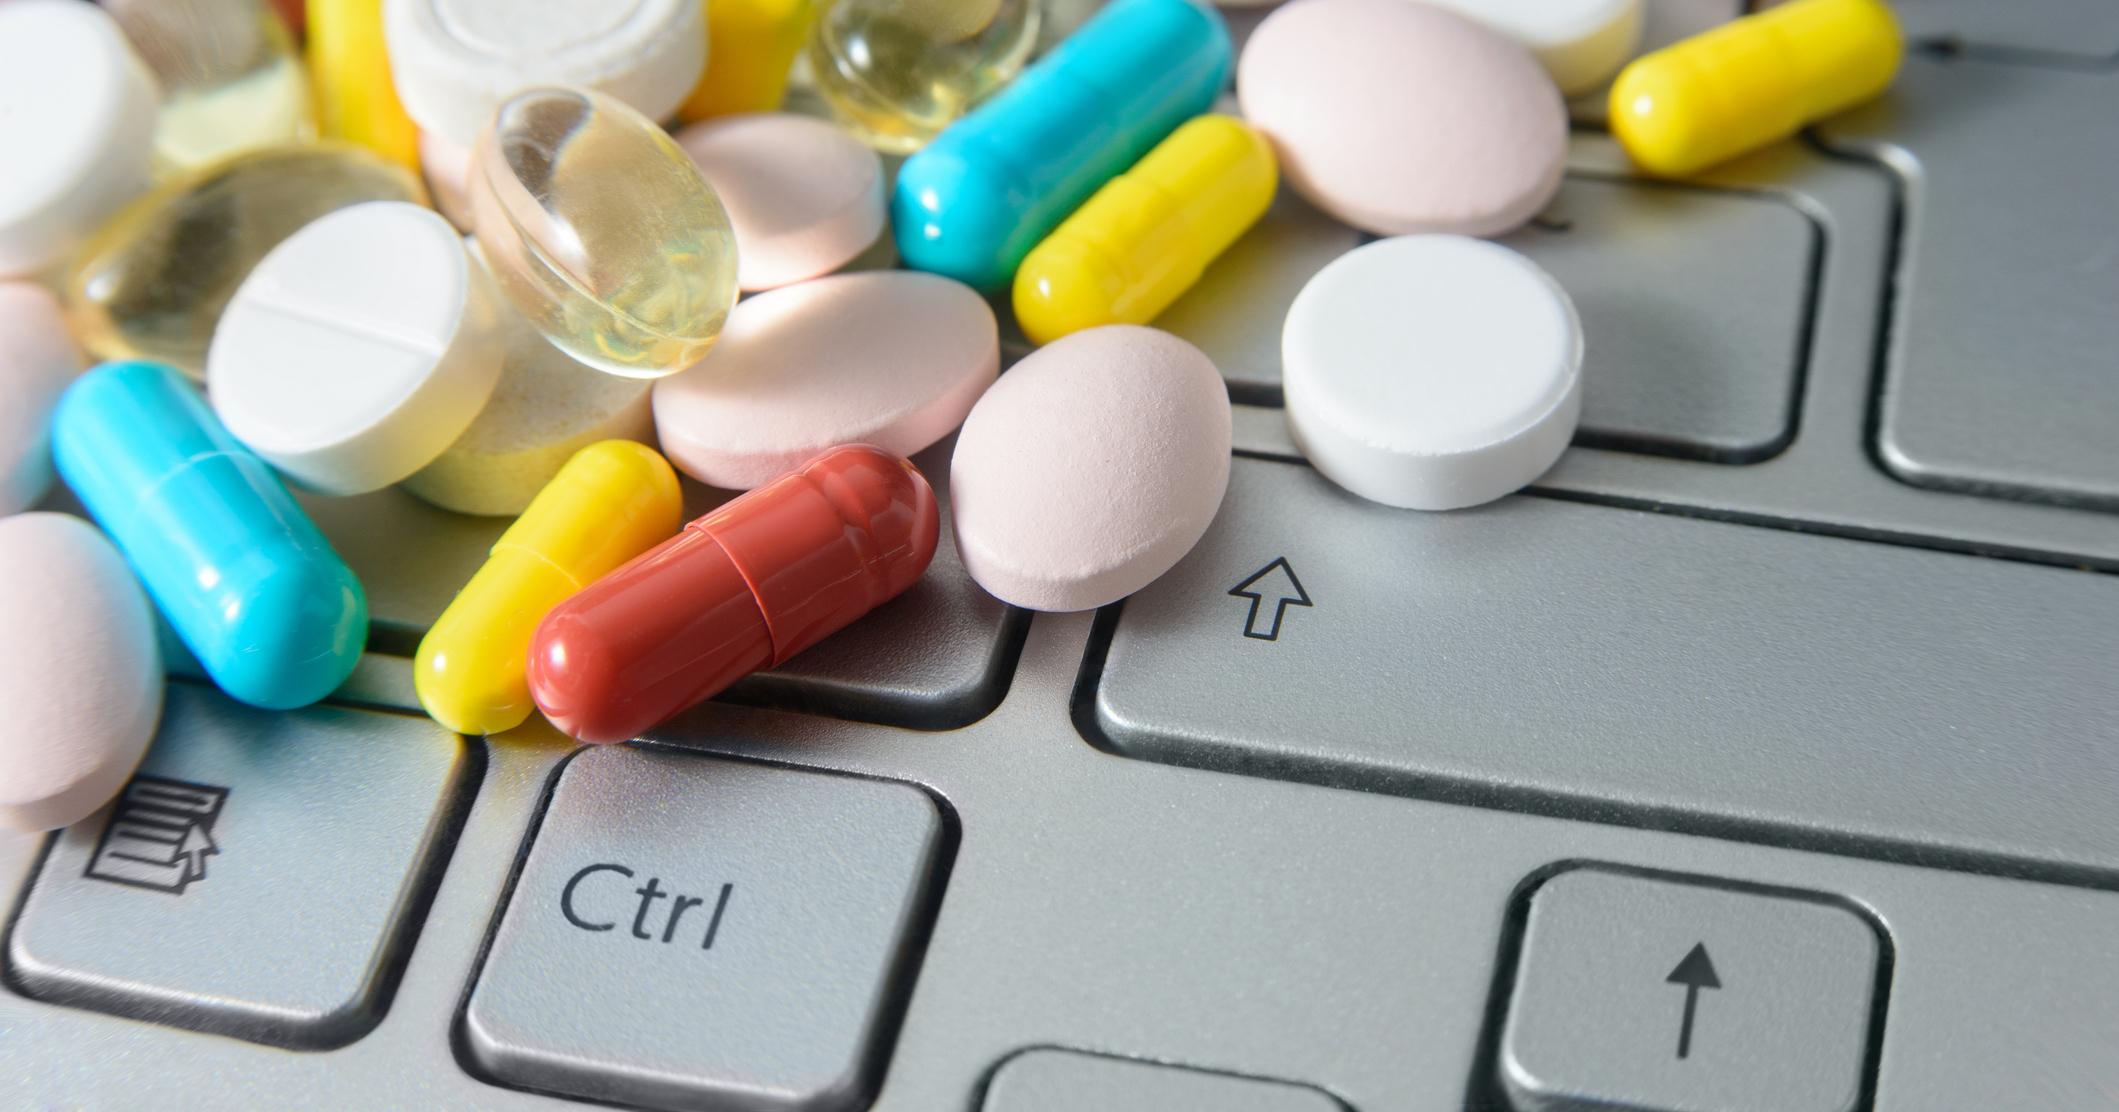 Реализован препарат. Интернет аптека. Лекарства. Интернет лекарства. Торговля лекарствами.